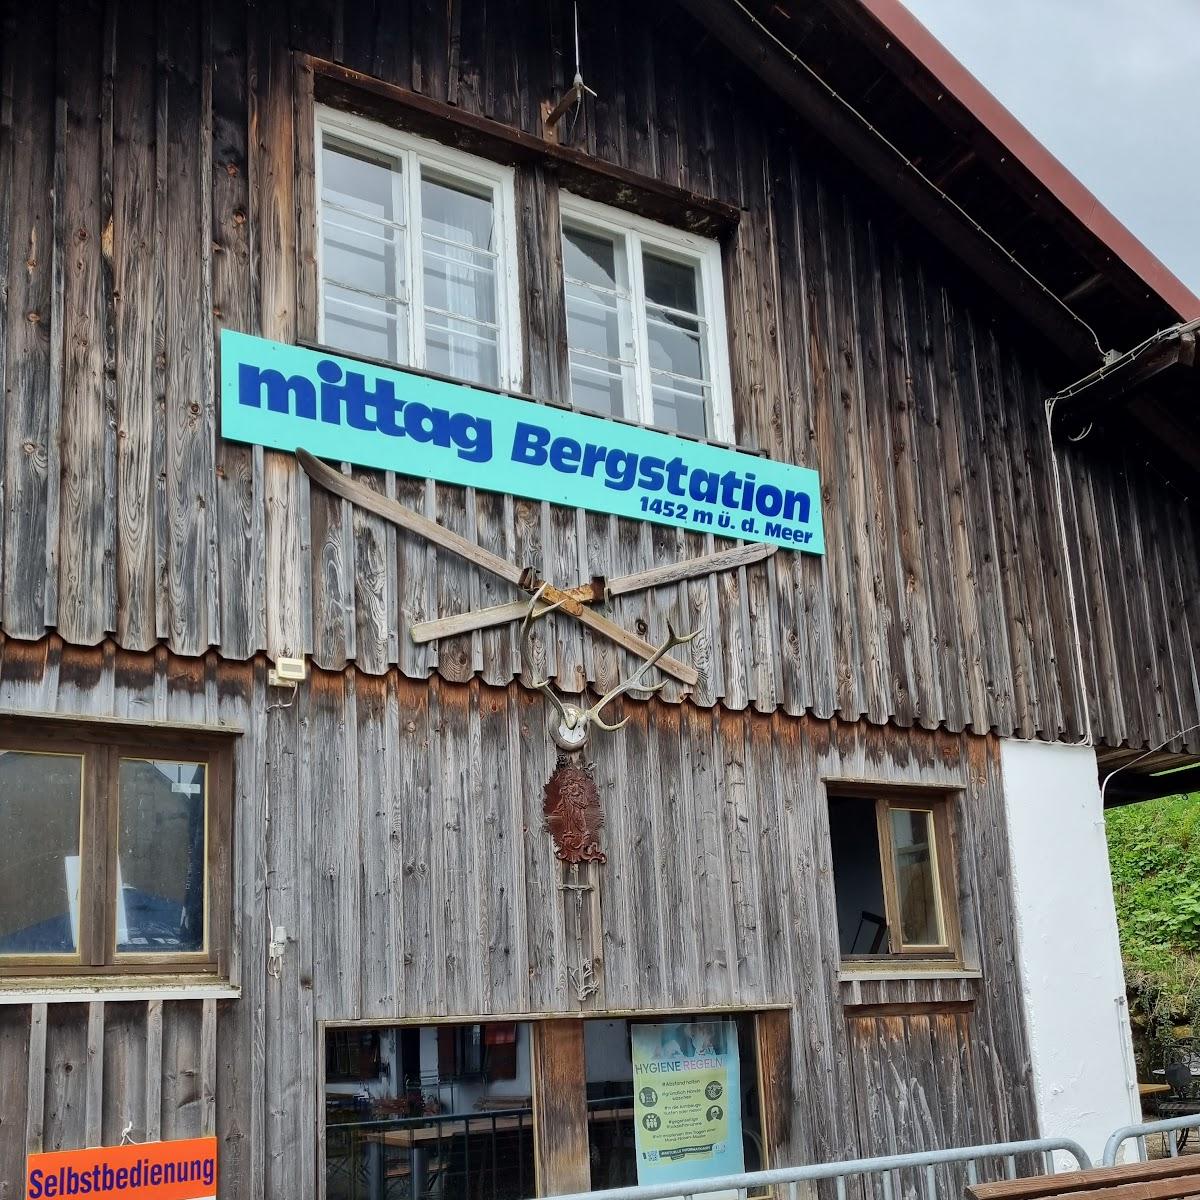 Restaurant "Restaurant Mittagberg" in Blaichach